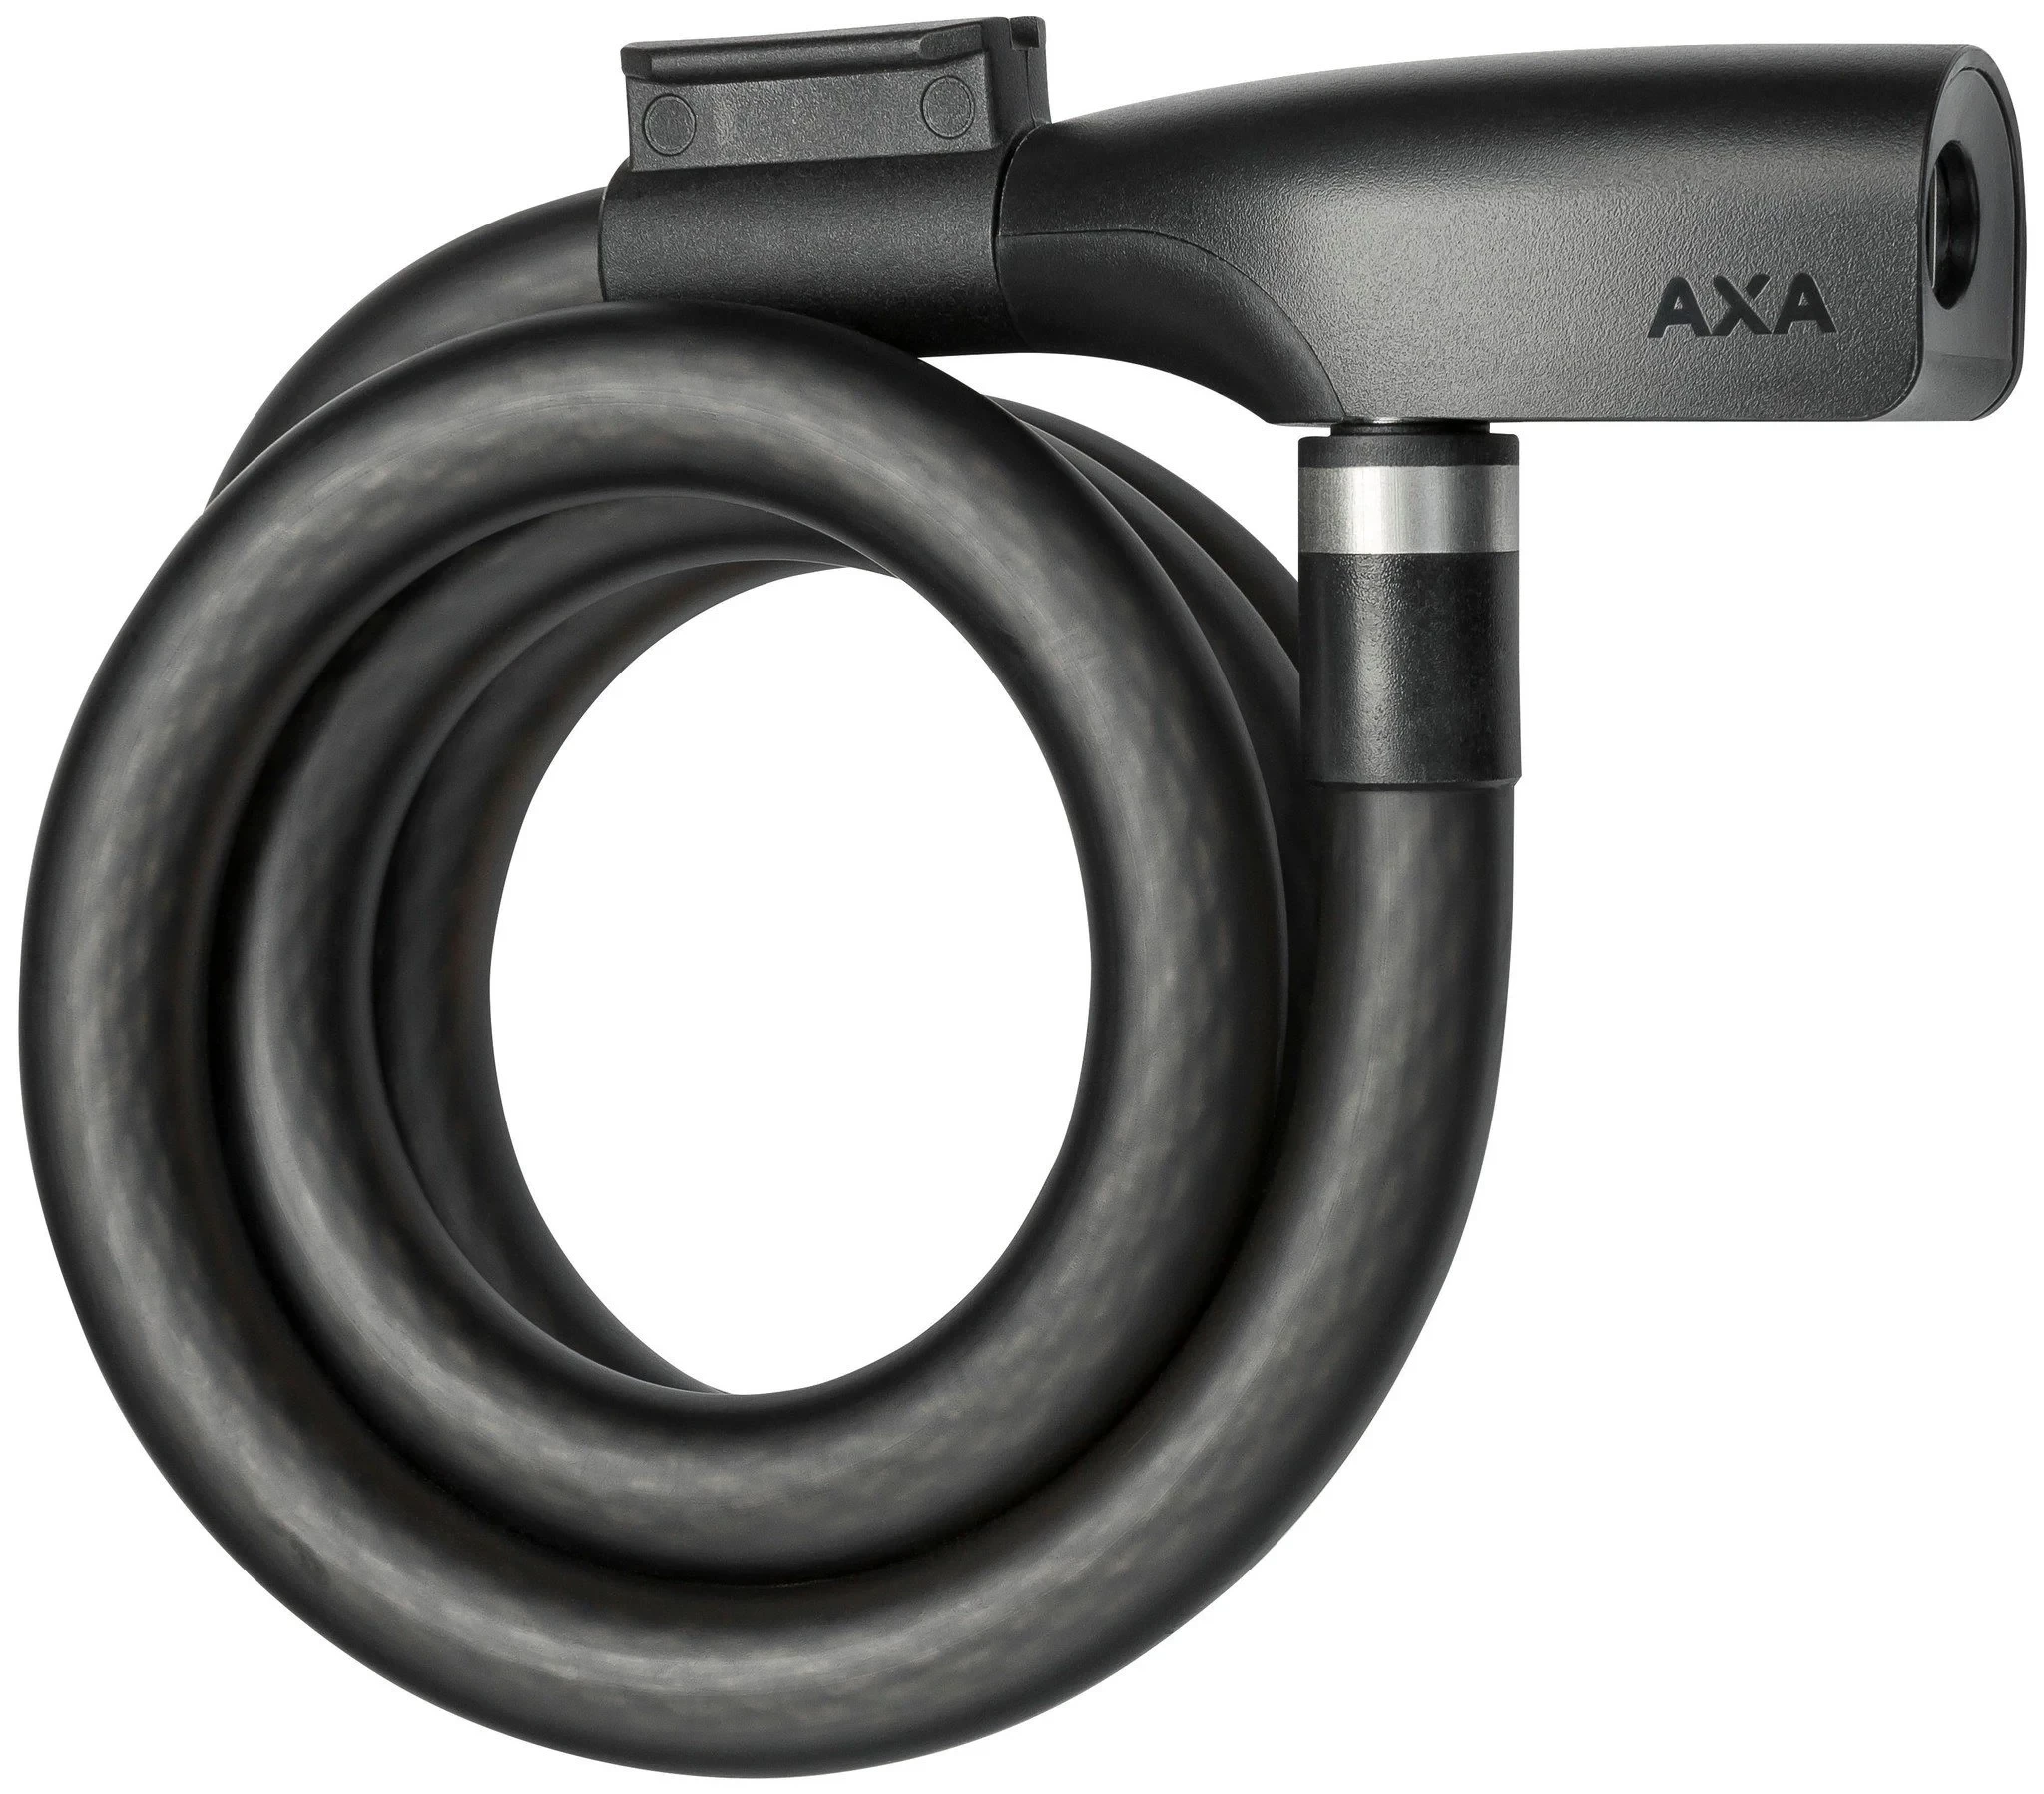 AXA Kabelslot Axa Resolute 15-120 - Zwart